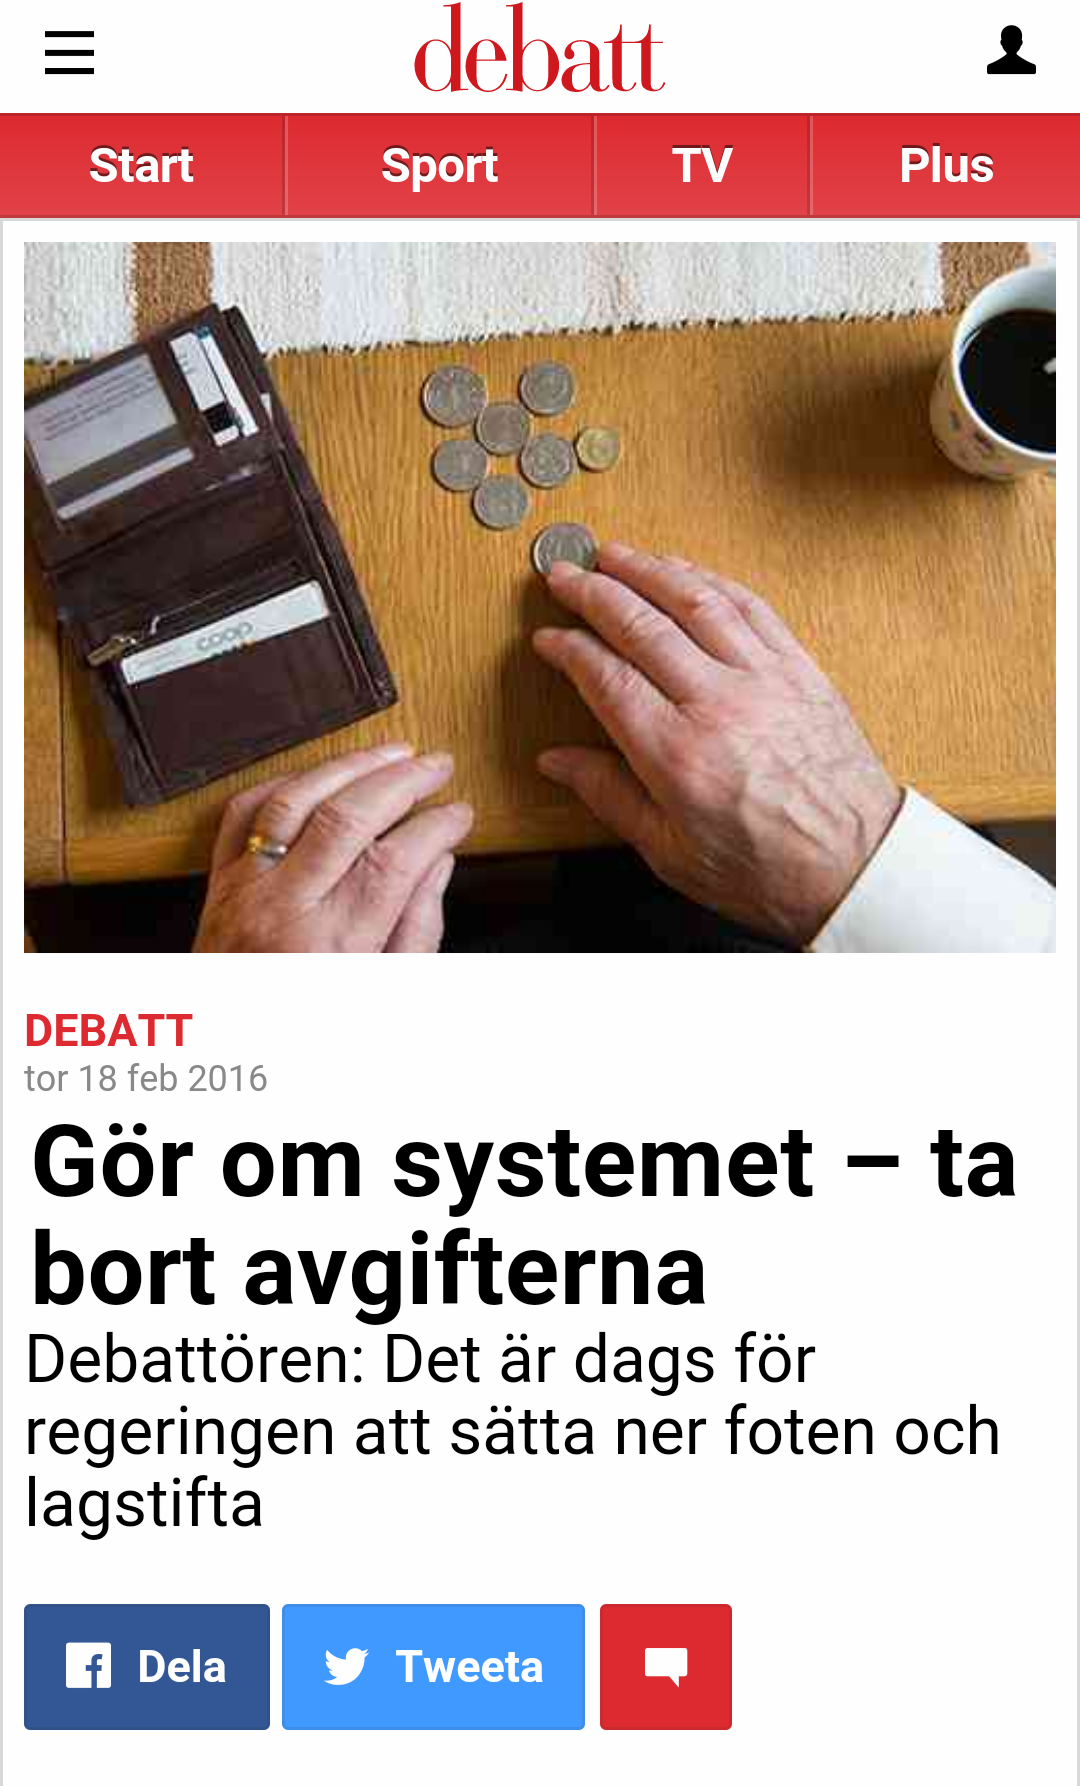 2016-02: Aftonbladet Debatt